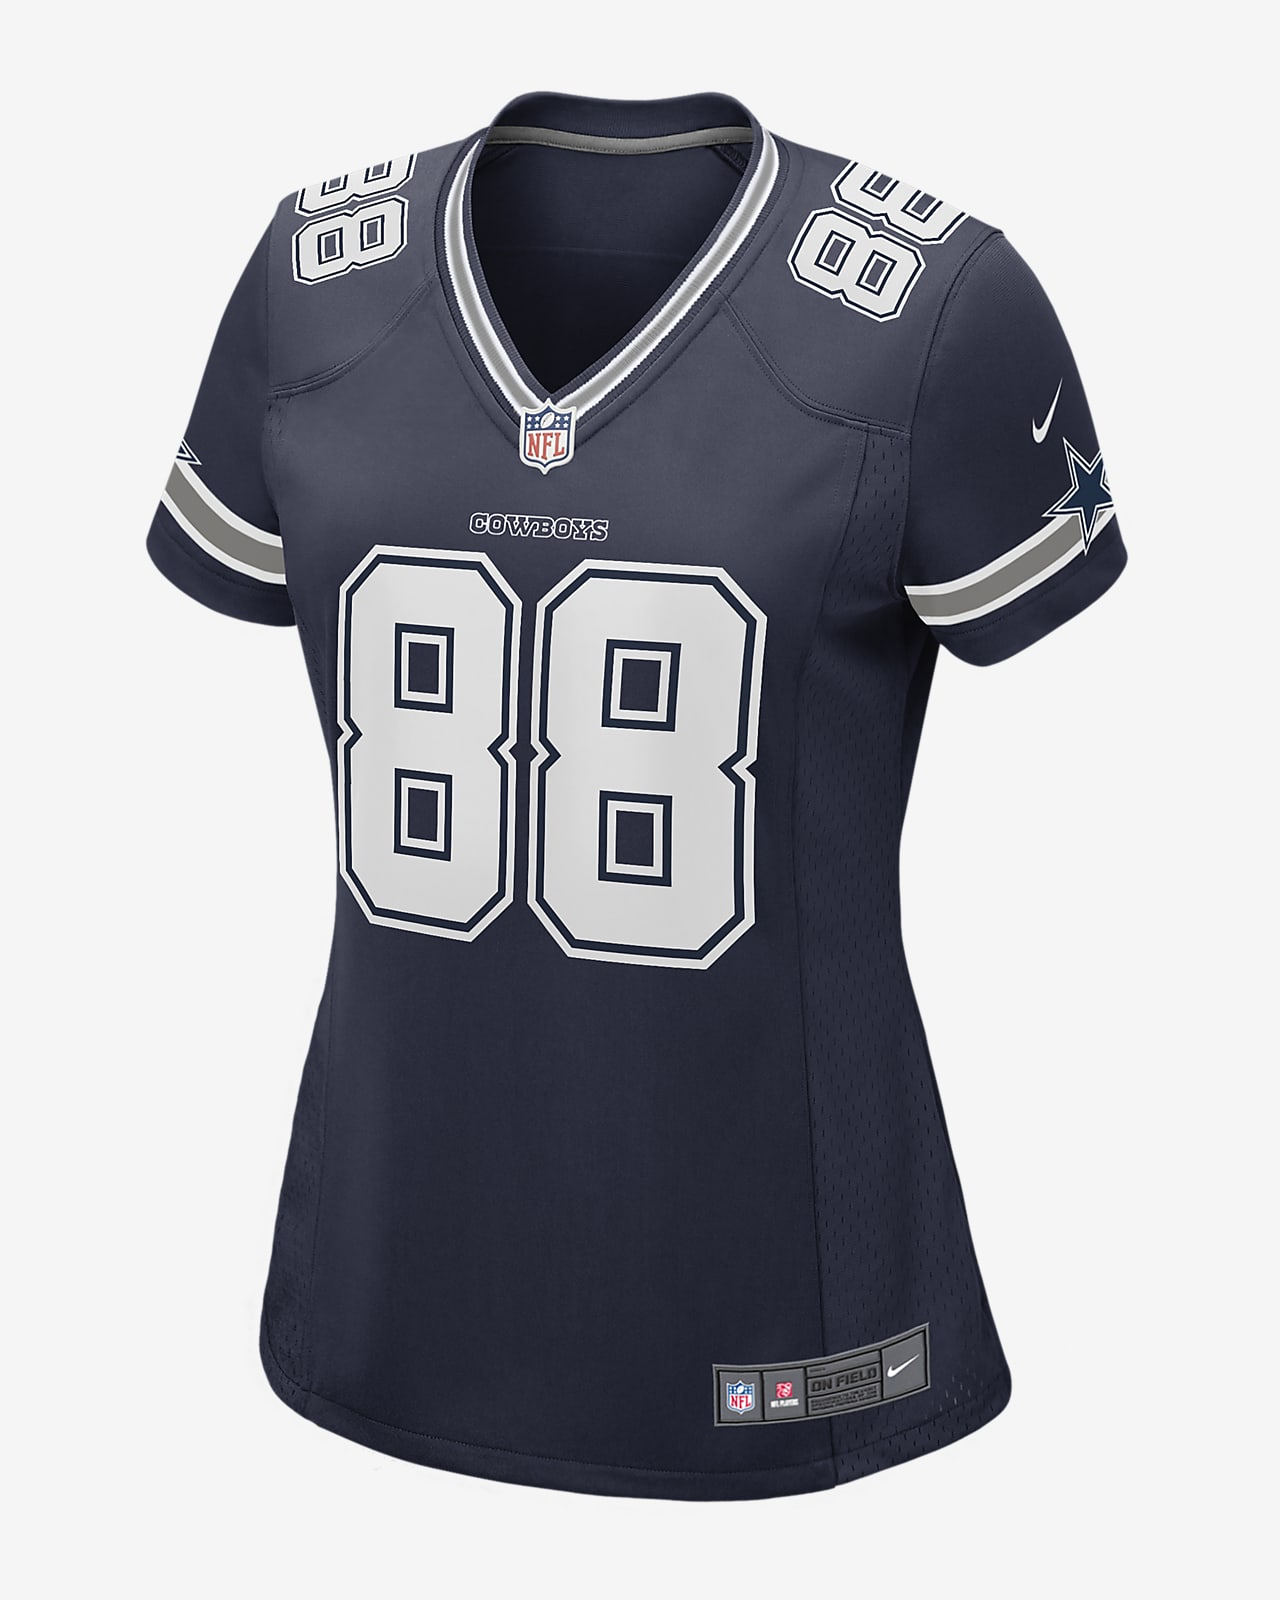 Camiseta de fútbol americano Game para mujer NFL Dallas Cowboys (CeeDee Lamb)